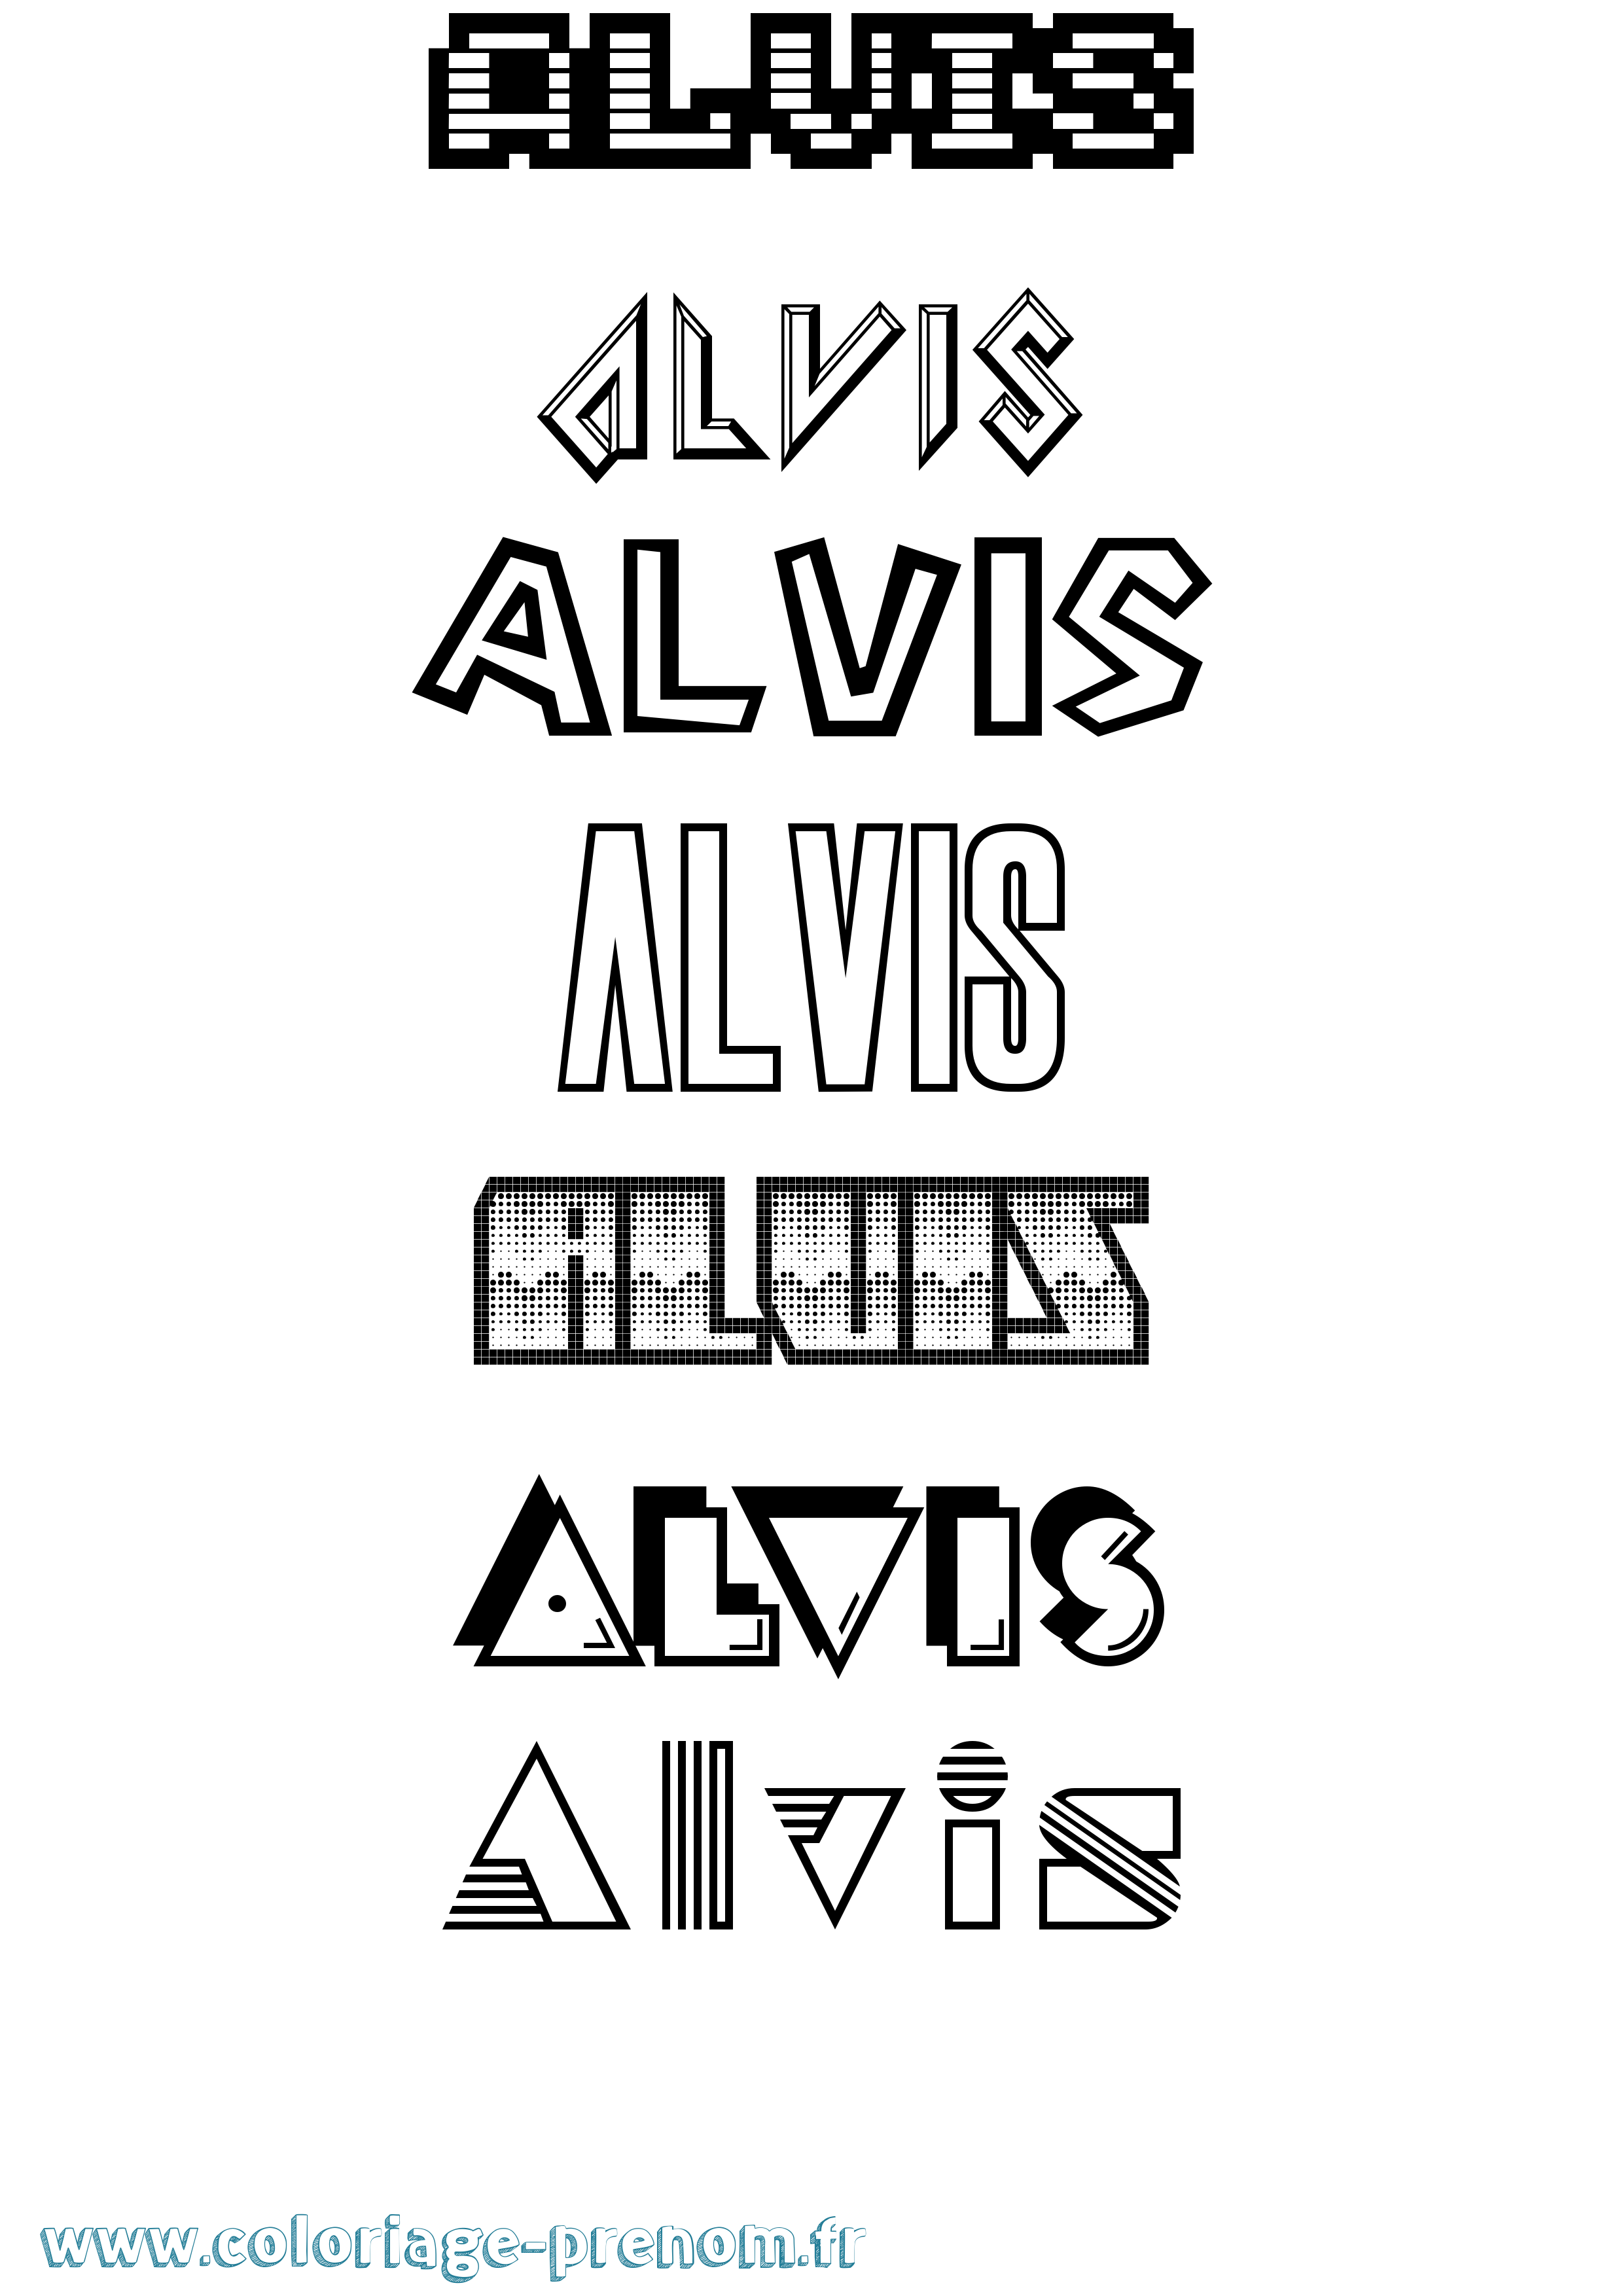 Coloriage prénom Alvis Jeux Vidéos